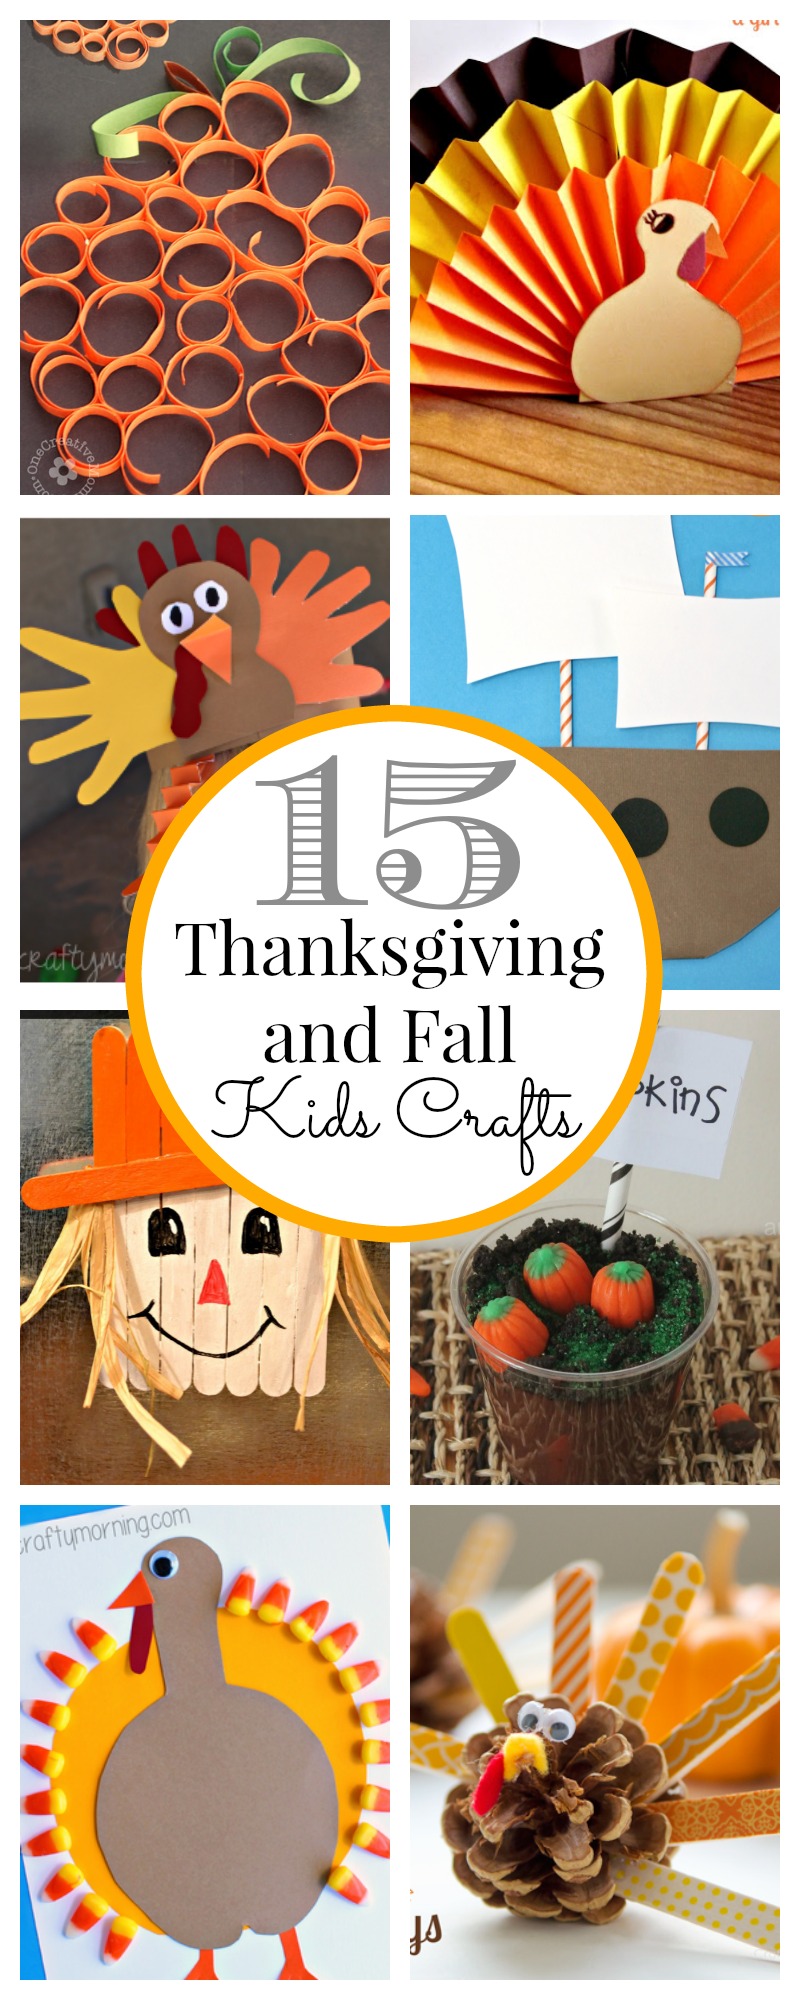 15 Thanksgiving Kids Crafts